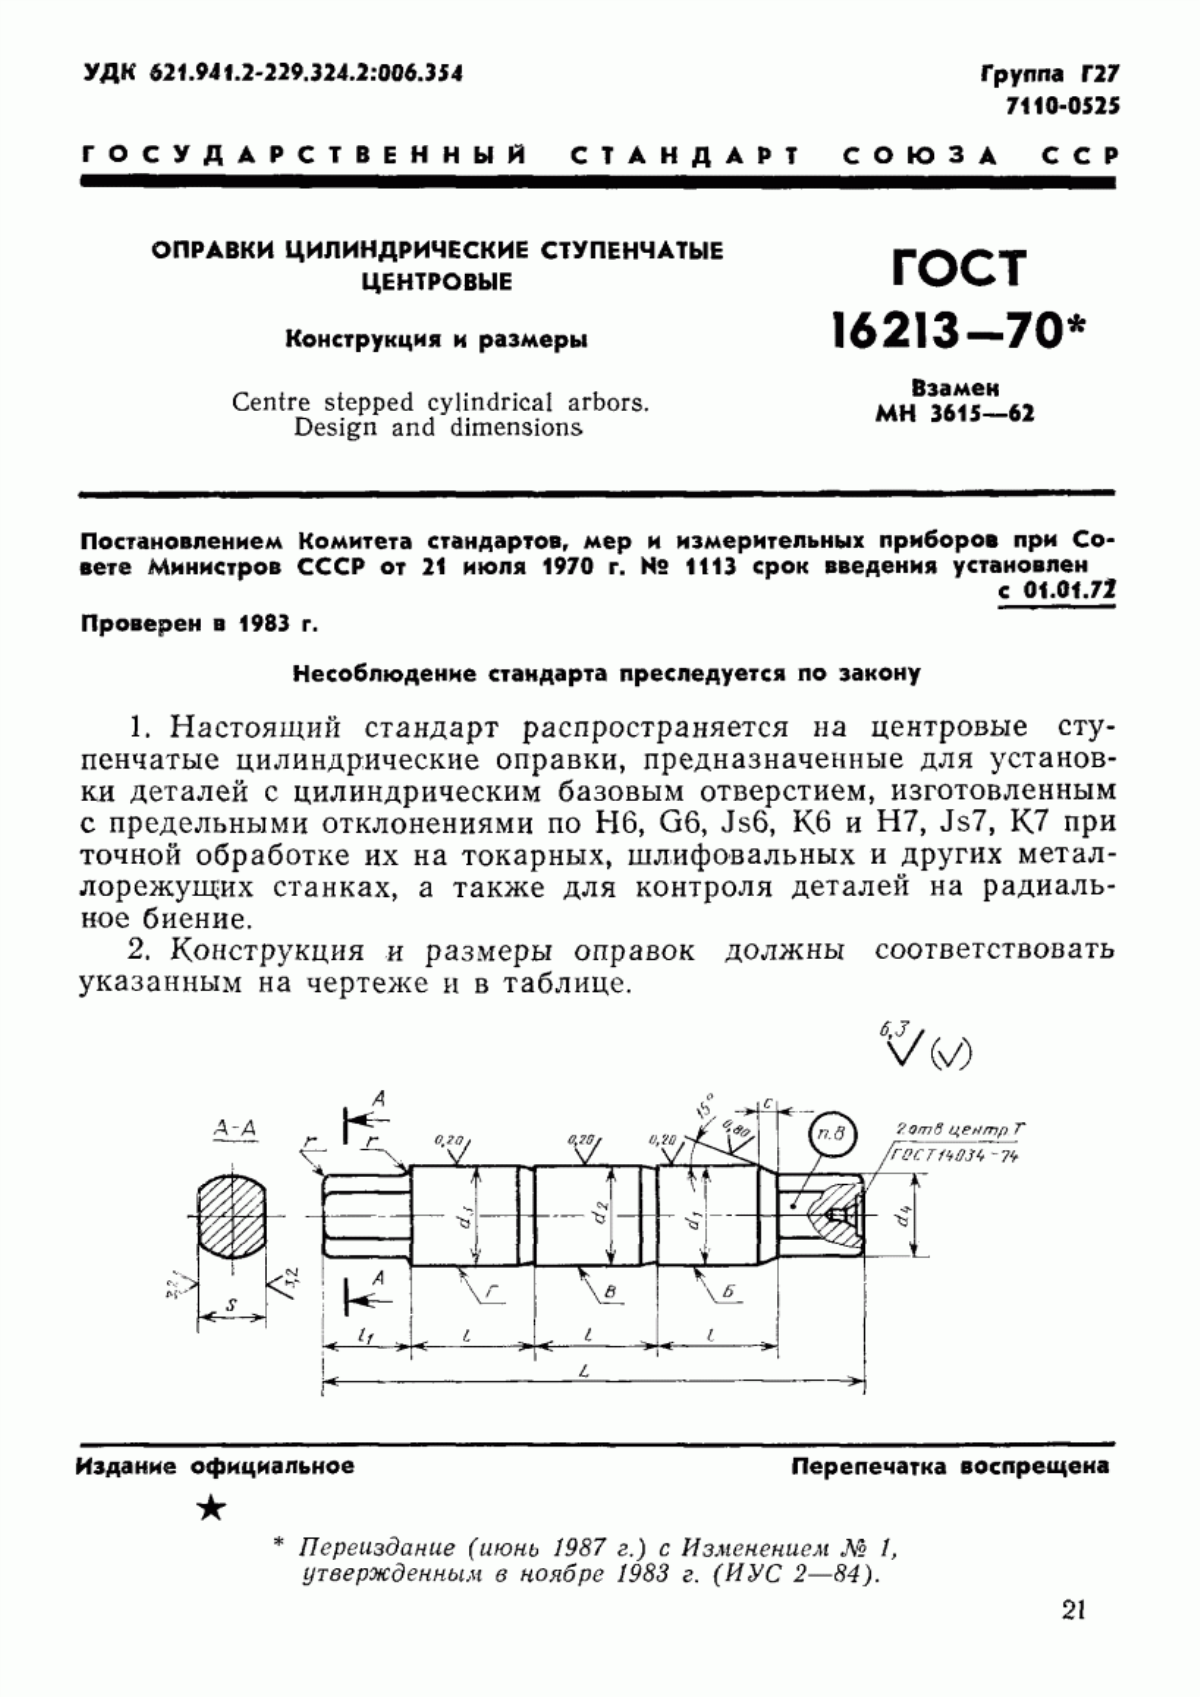 ГОСТ 16213-70 Оправки цилиндрические ступенчатые центровые. Конструкция и размеры